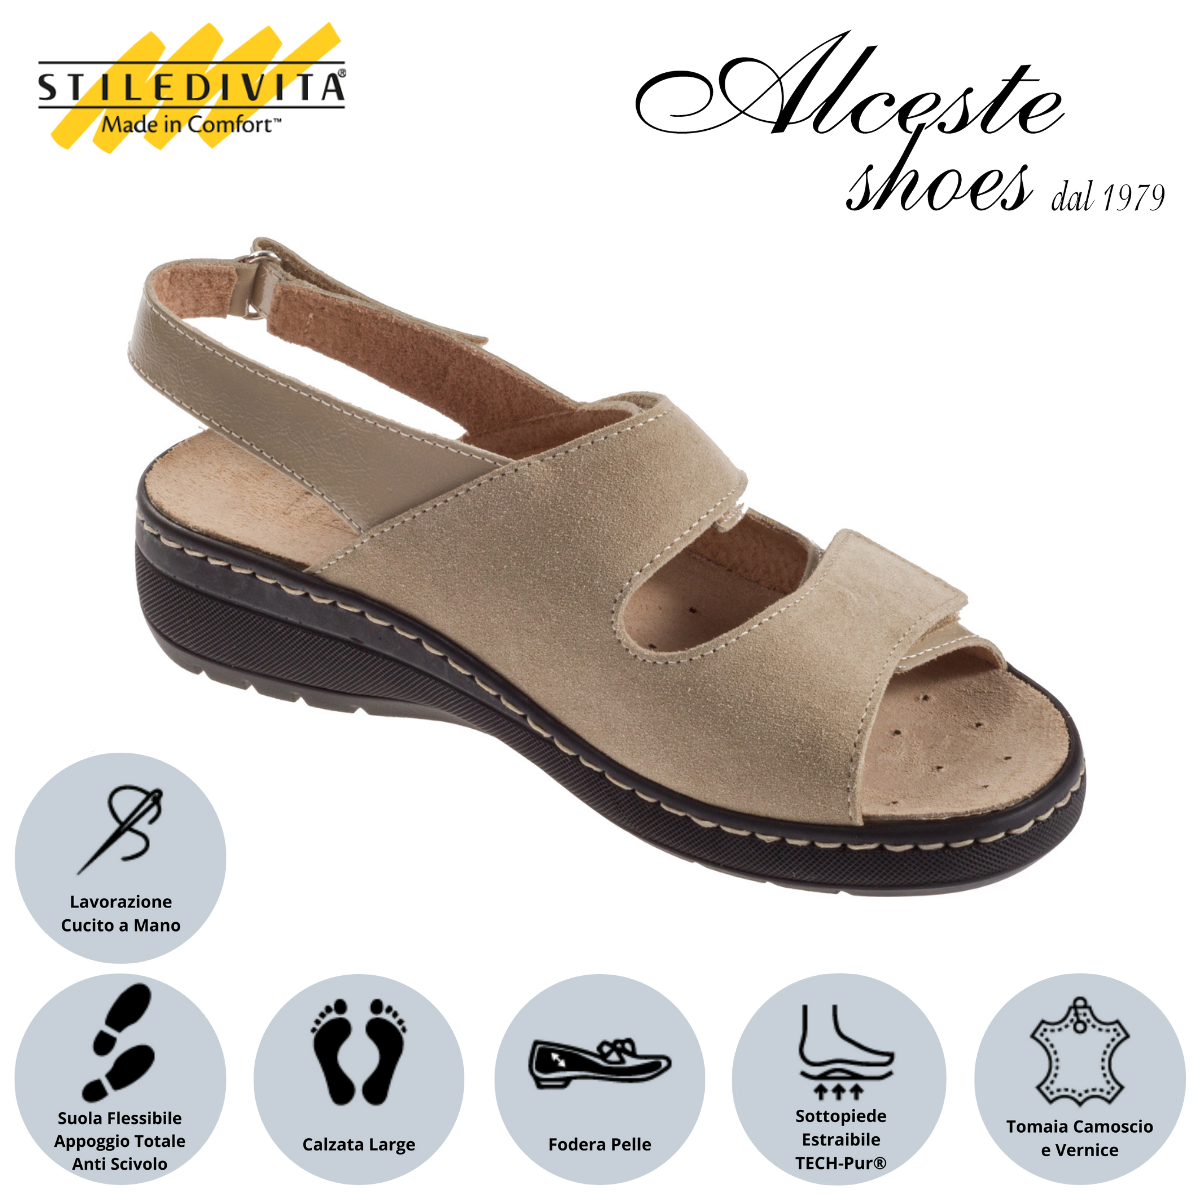 Sandalo con Strappi e Sottopiede Estraibile "Stiledivita" Art. 8228 Naplac e Camoscio Beige Alceste Shoes 15